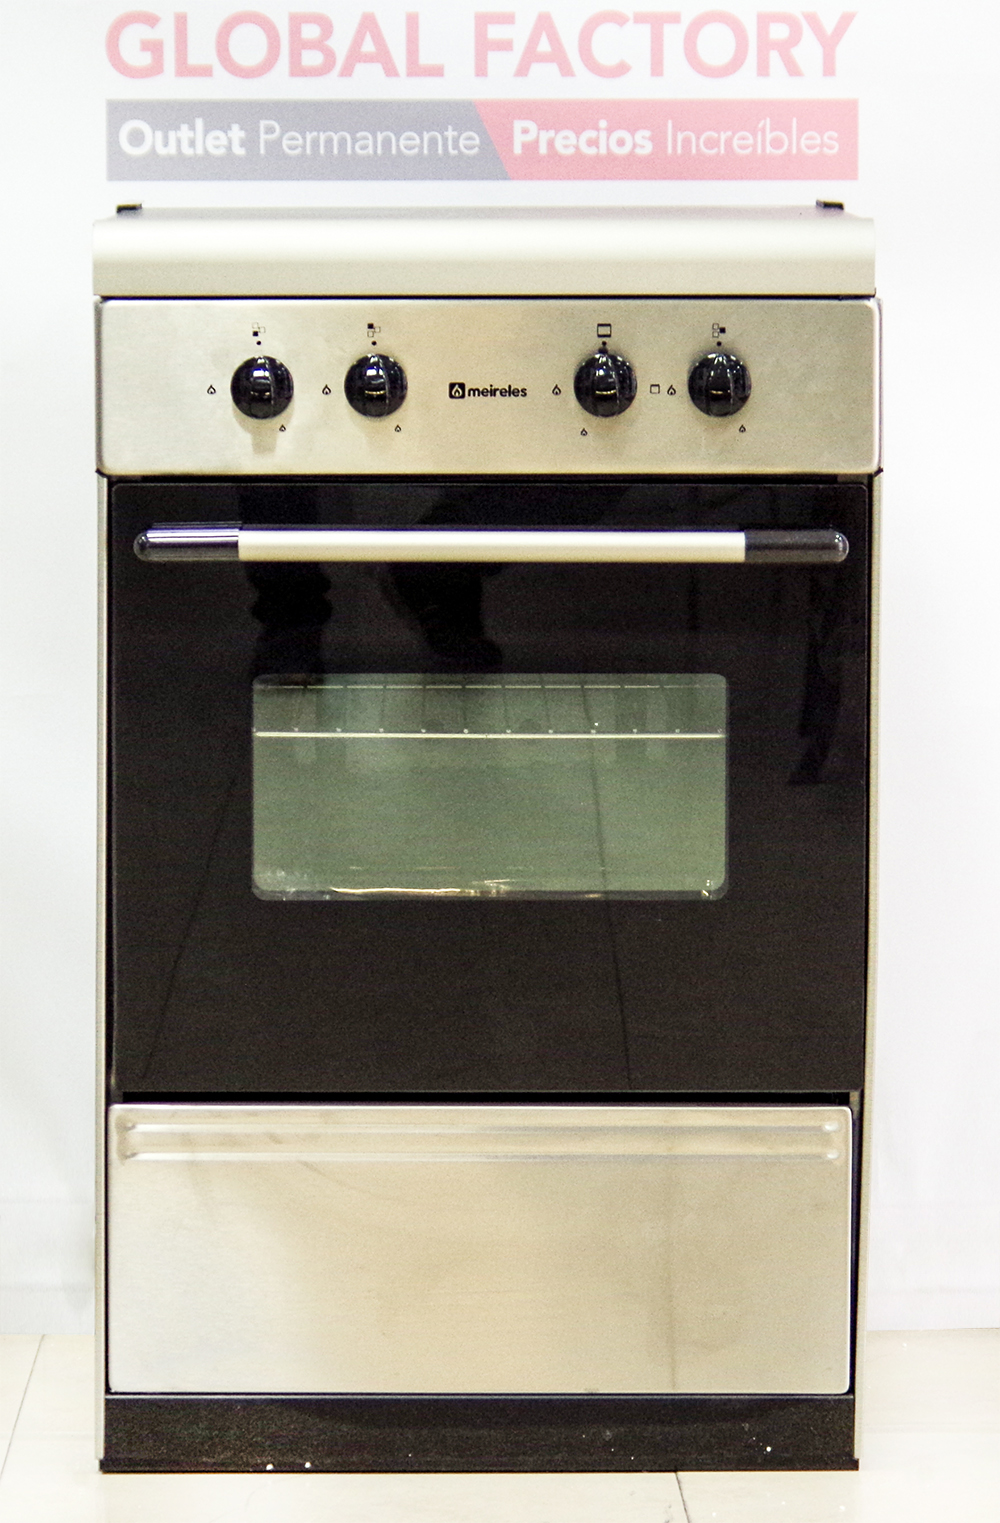 Meireles G 1530 DV X.1 Cocina de Gas Butano/Propano 3 Zonas 52cm +